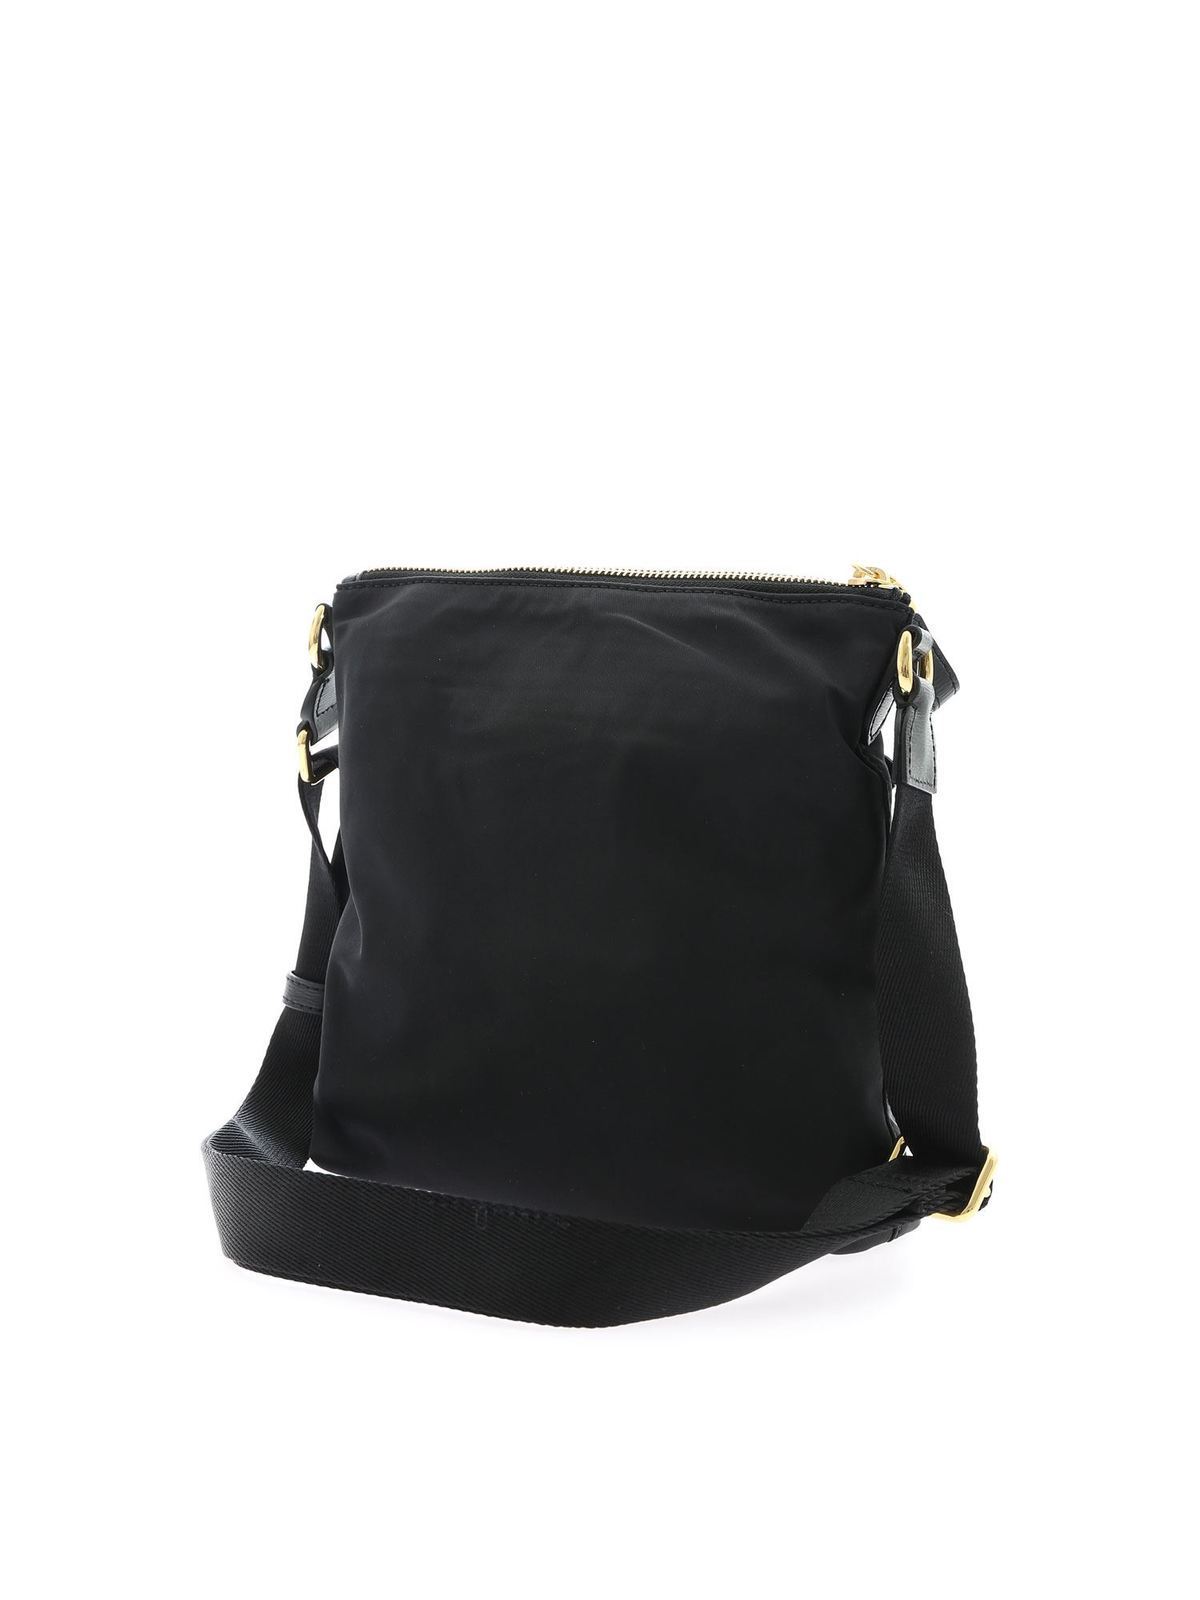 Prada Stud-embellished Strap Nylon Cross-body Bag in Black